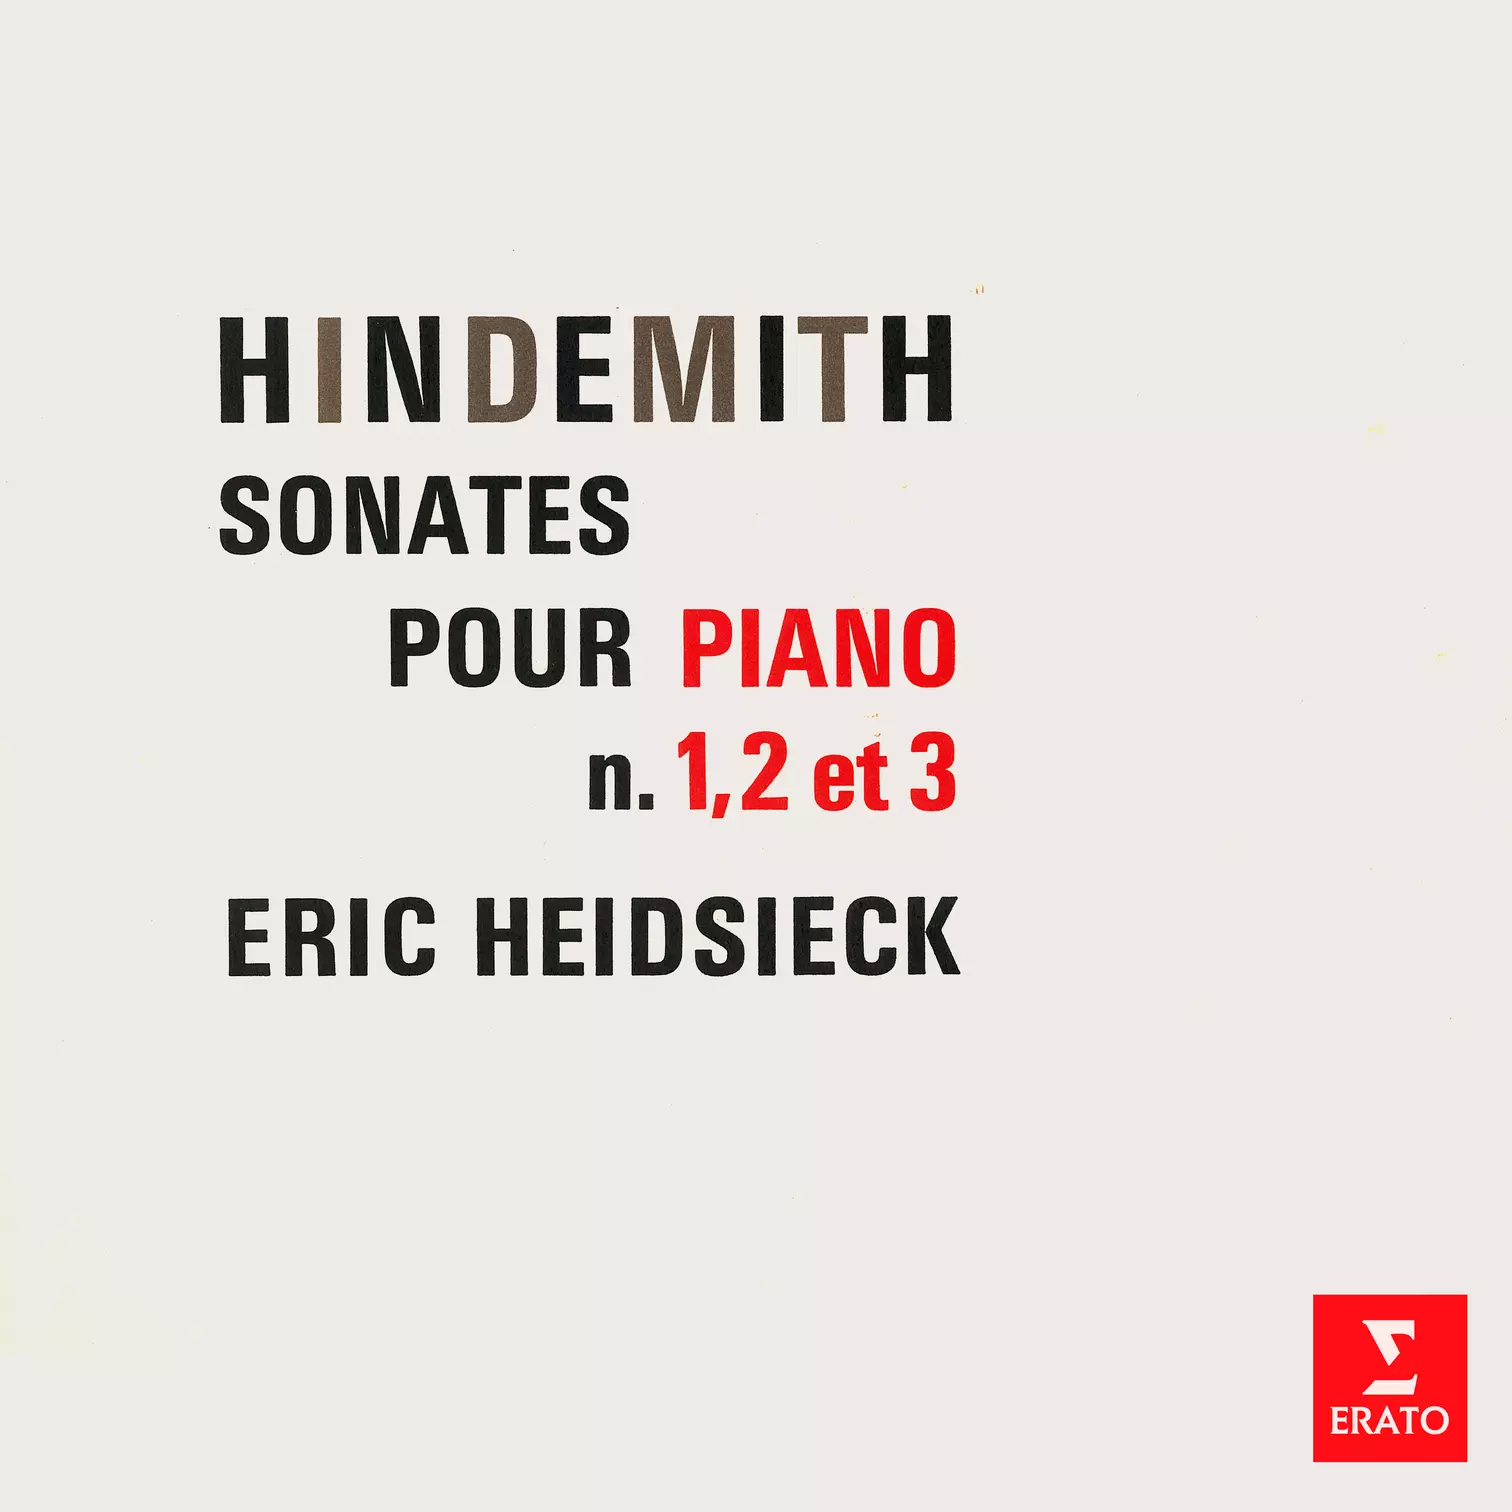 Hindemith: Sonates pour piano Nos. 1, 2 & 3